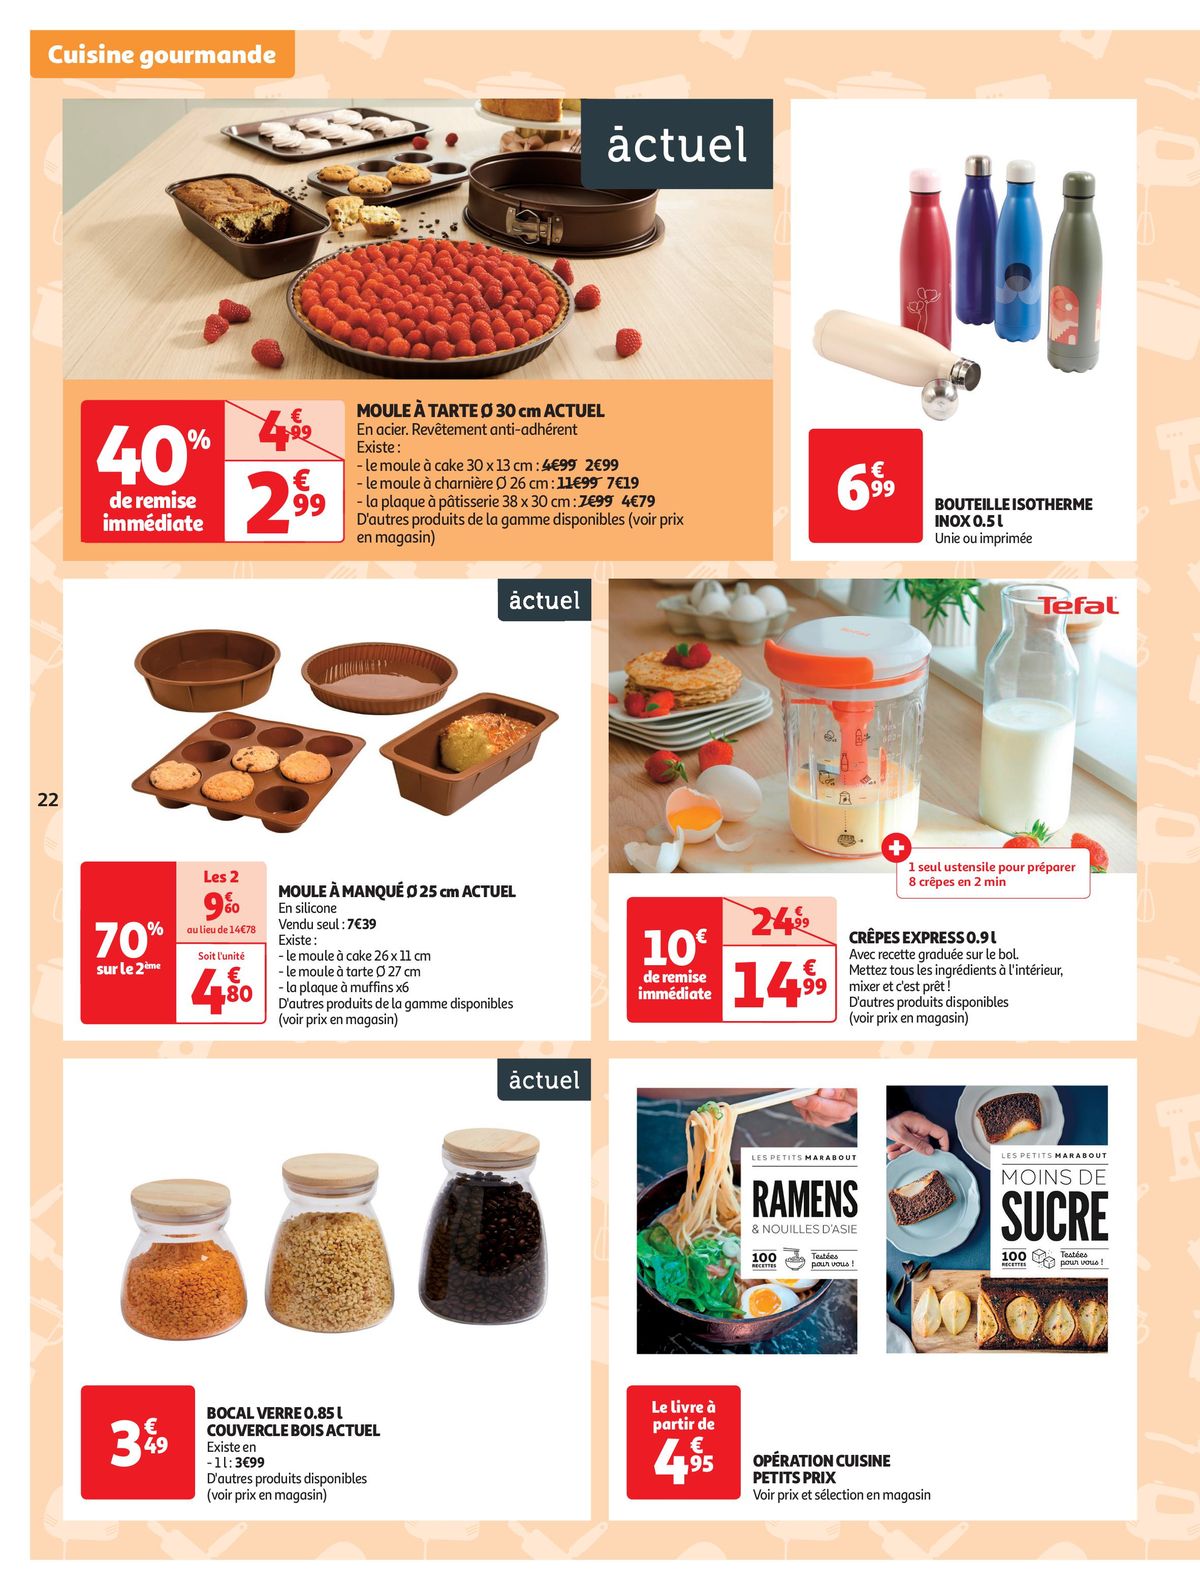 Catalogue Spécial Cuisine Gourmane dans votre supermarché, page 00022